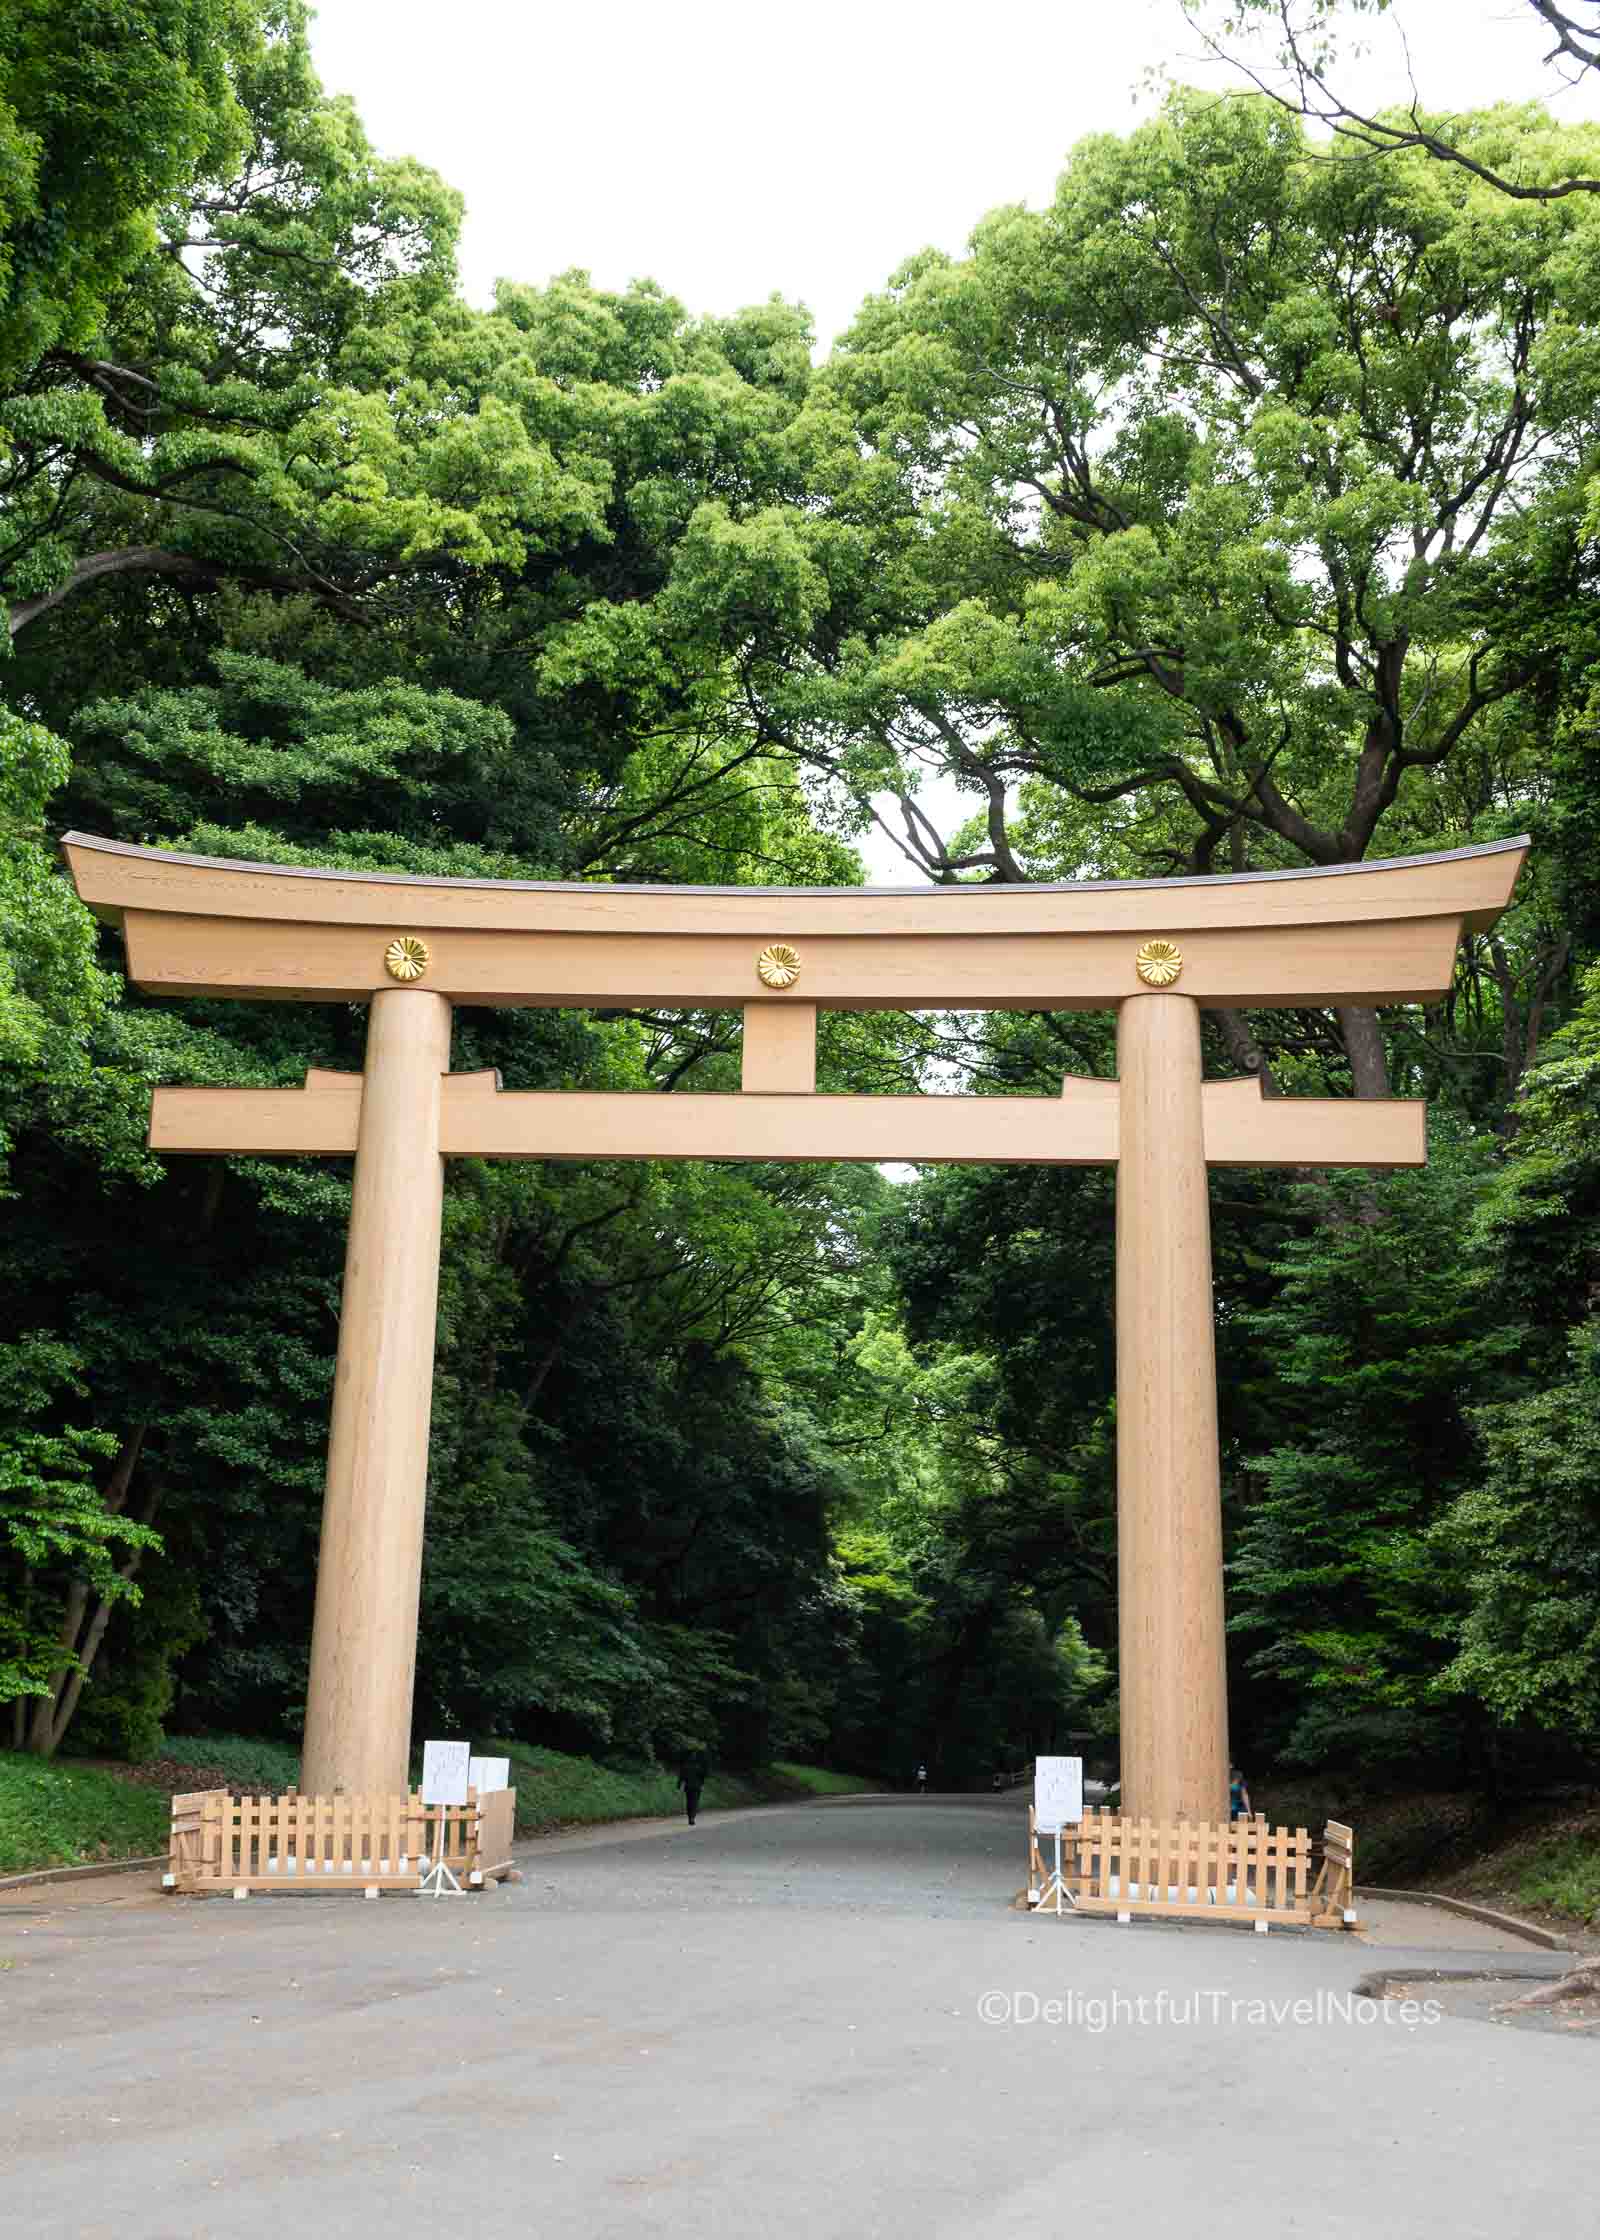 Meiji Jingu large wooden torii gate at the entrance